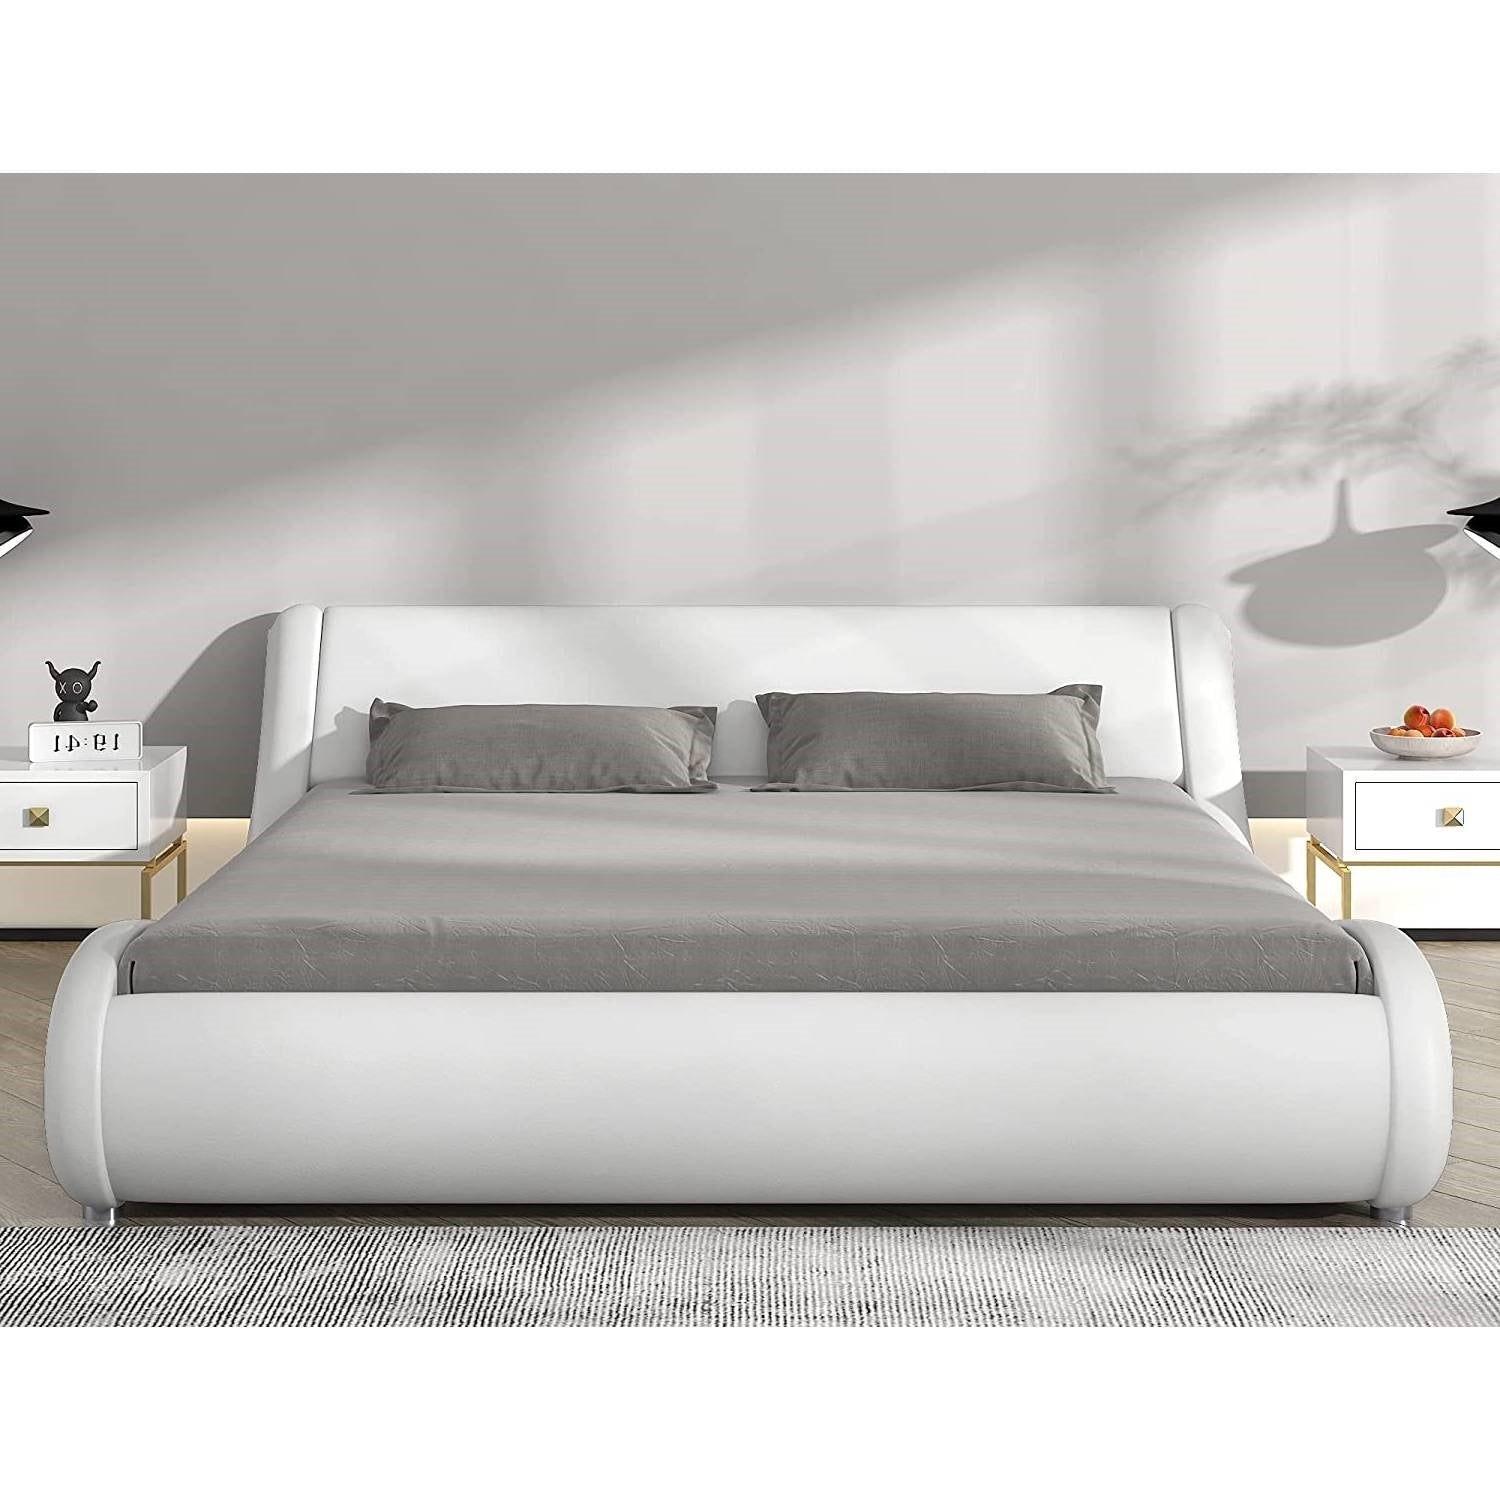 Bedroom > Bed Frames > Platform Beds - Full Modern White Faux Leather Upholstered Platform Bed Frame With Headboard